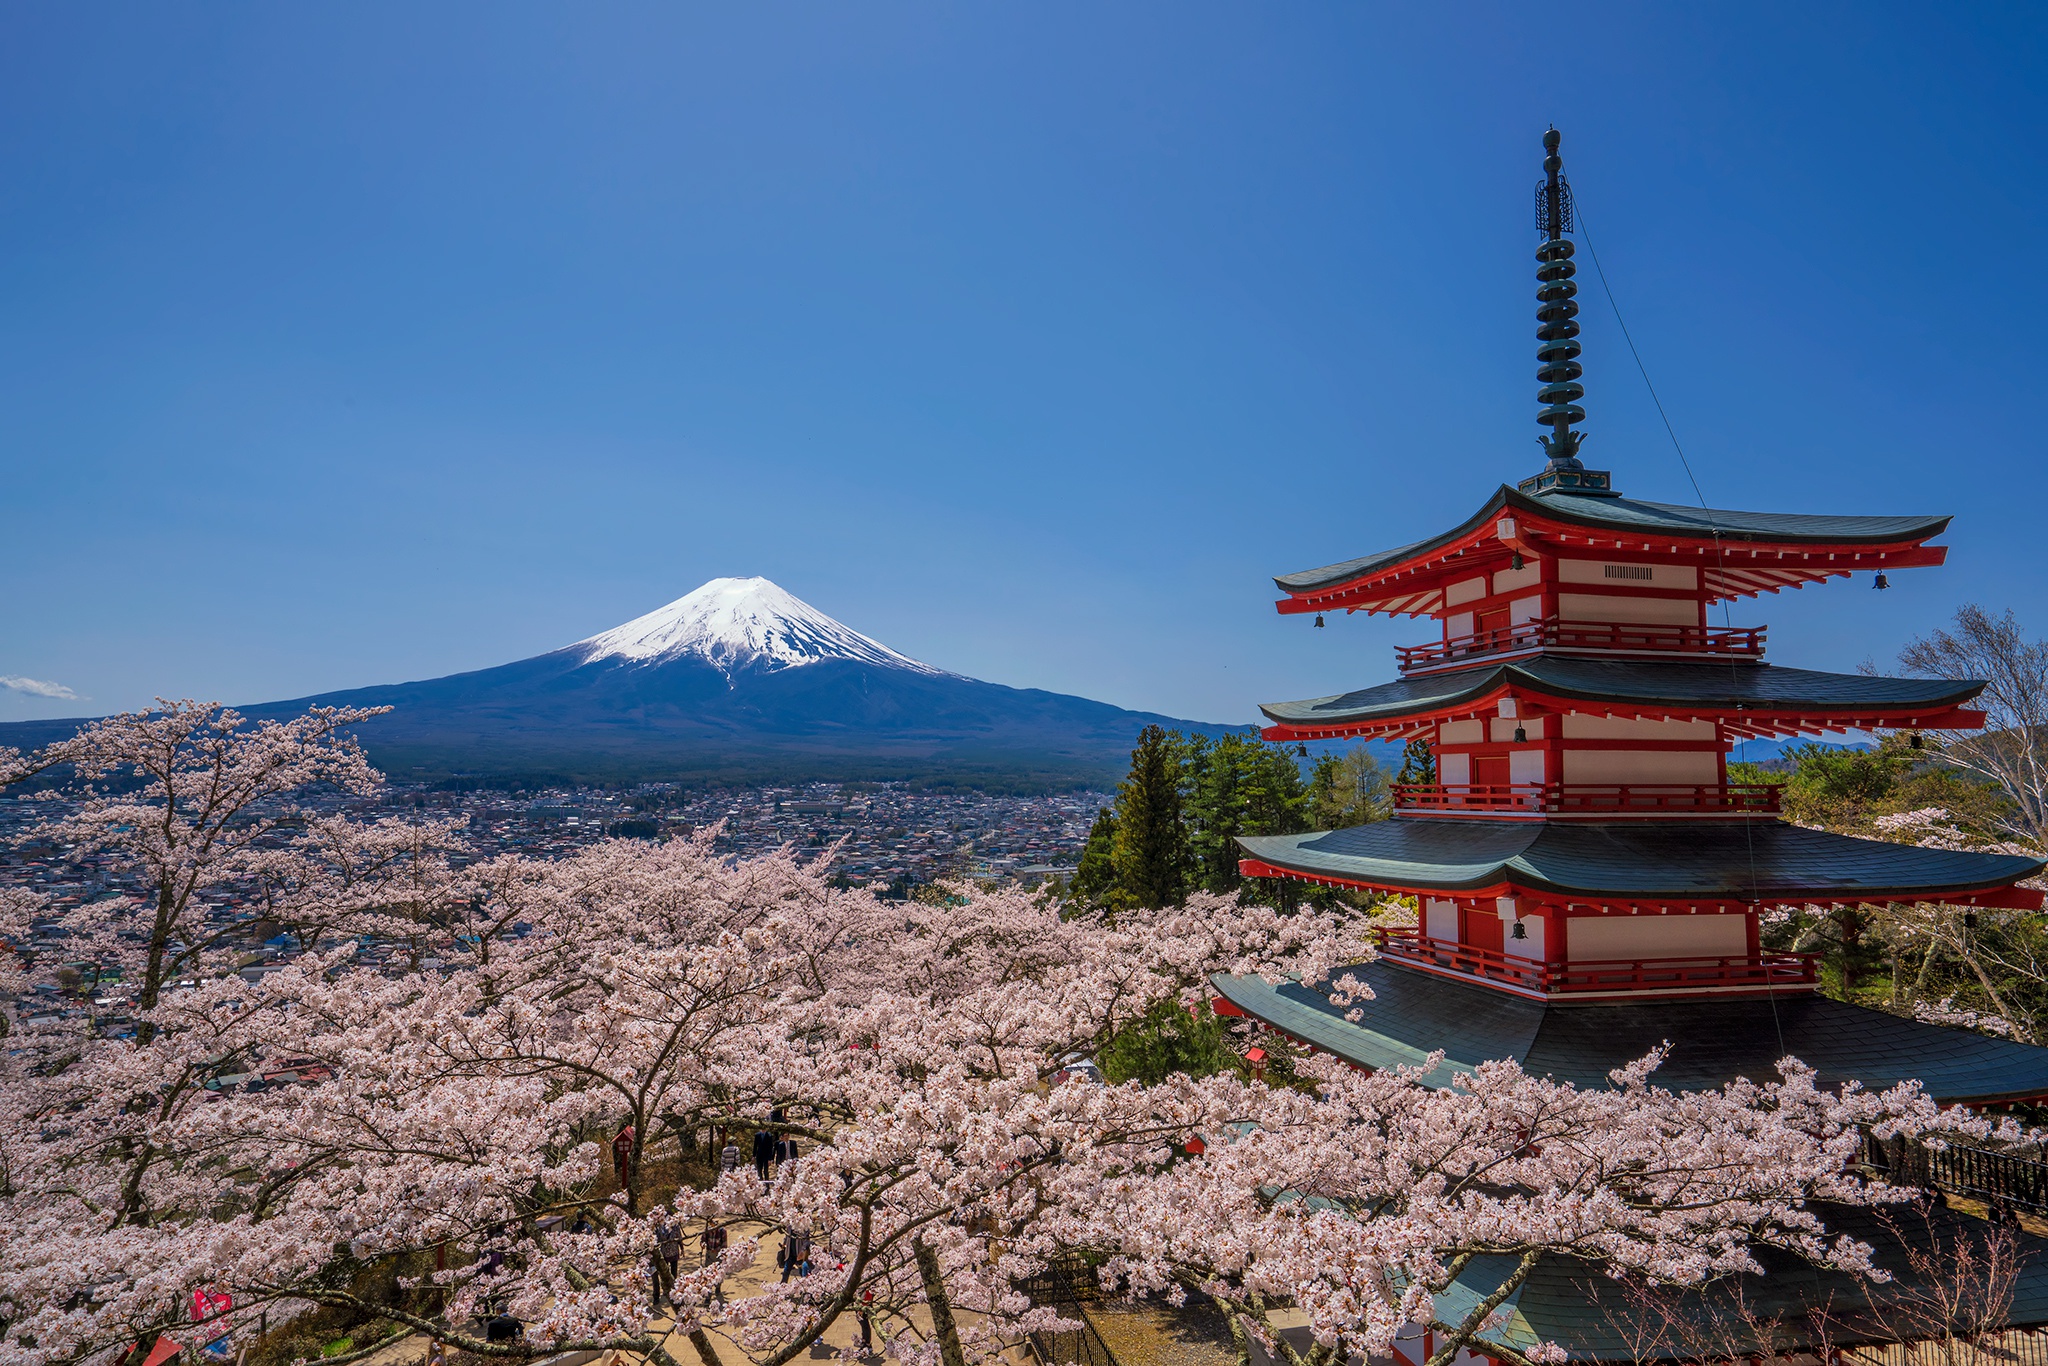 Descarga gratuita de fondo de pantalla para móvil de Monte Fuji, Volcanes, Tierra/naturaleza.